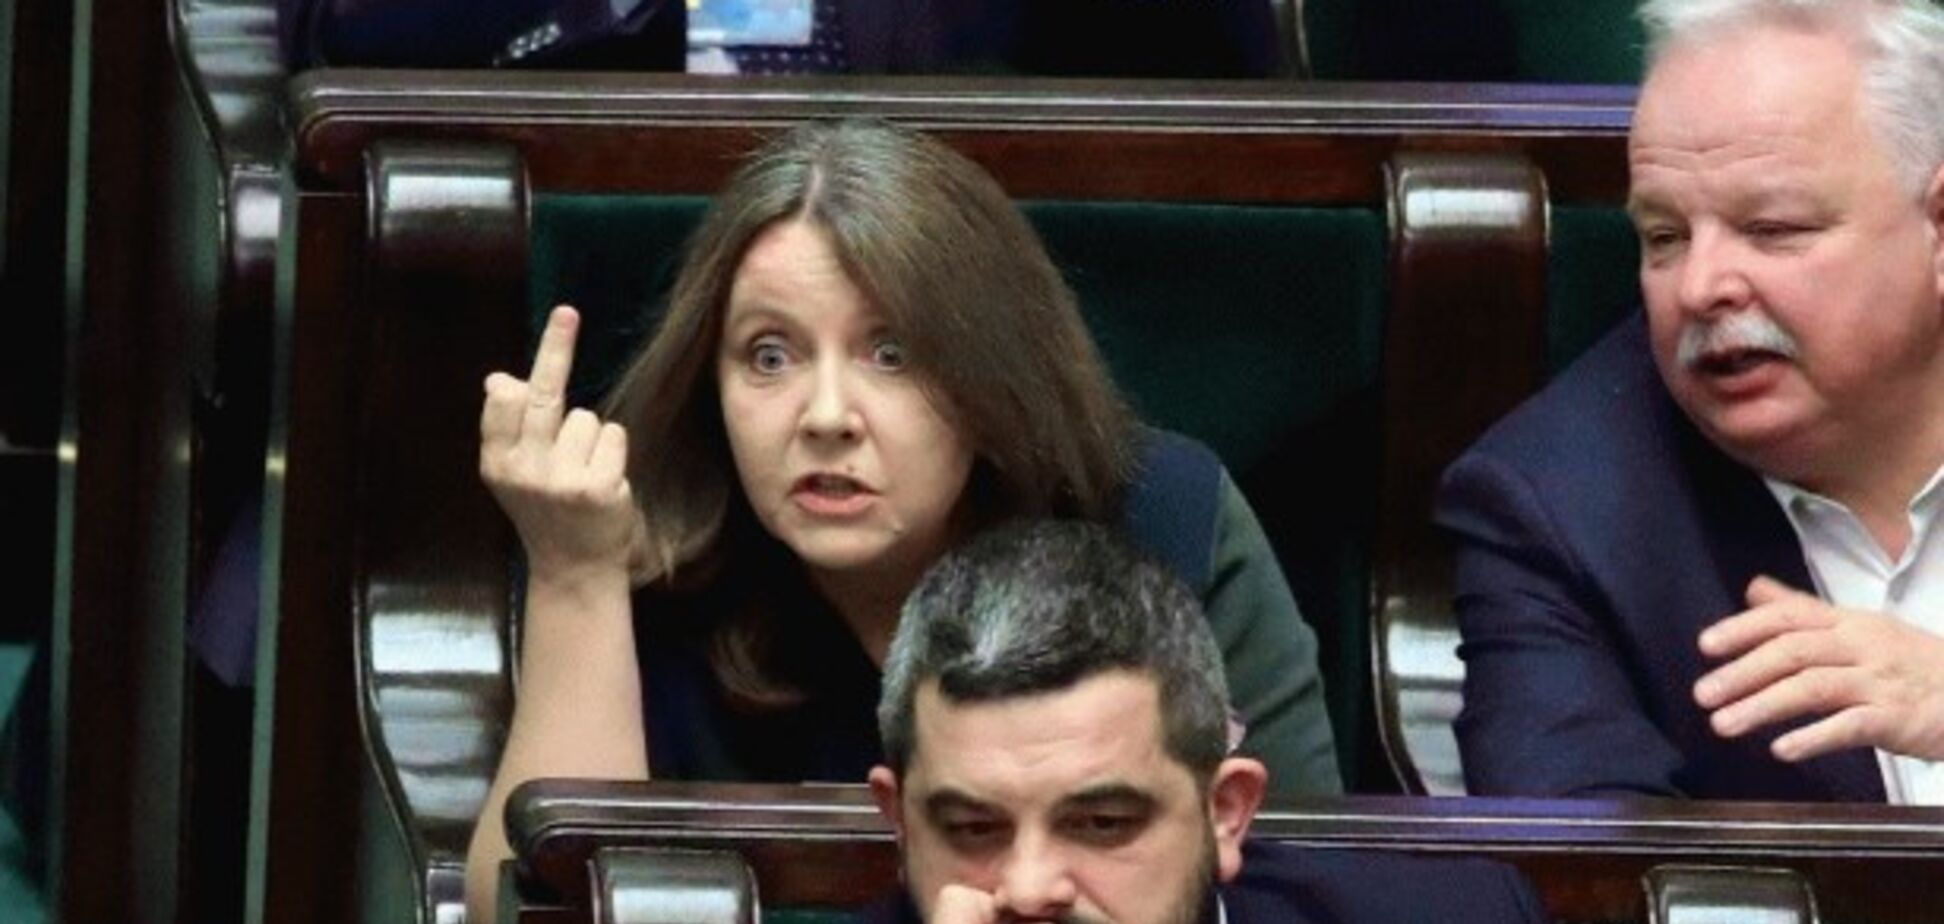 Показала середнього пальця: у Польщі депутатка публічно оскандалилася. Фото й відео